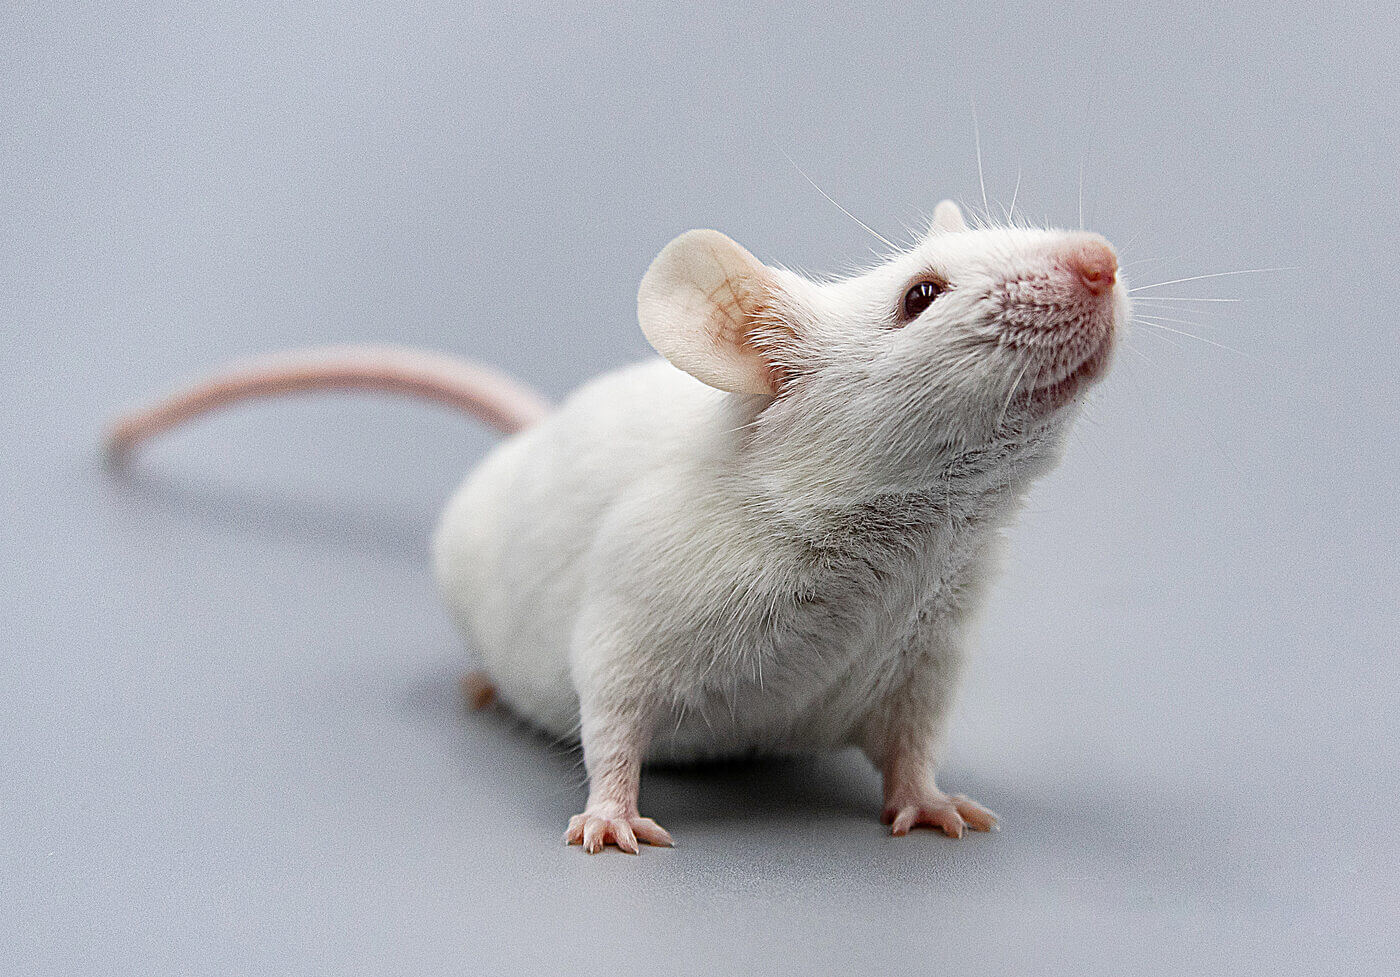 Люди на самом деле помнят детские воспоминания? Ученые заставили мышей вспомнить «забытые» детское воспоминания. Фото.